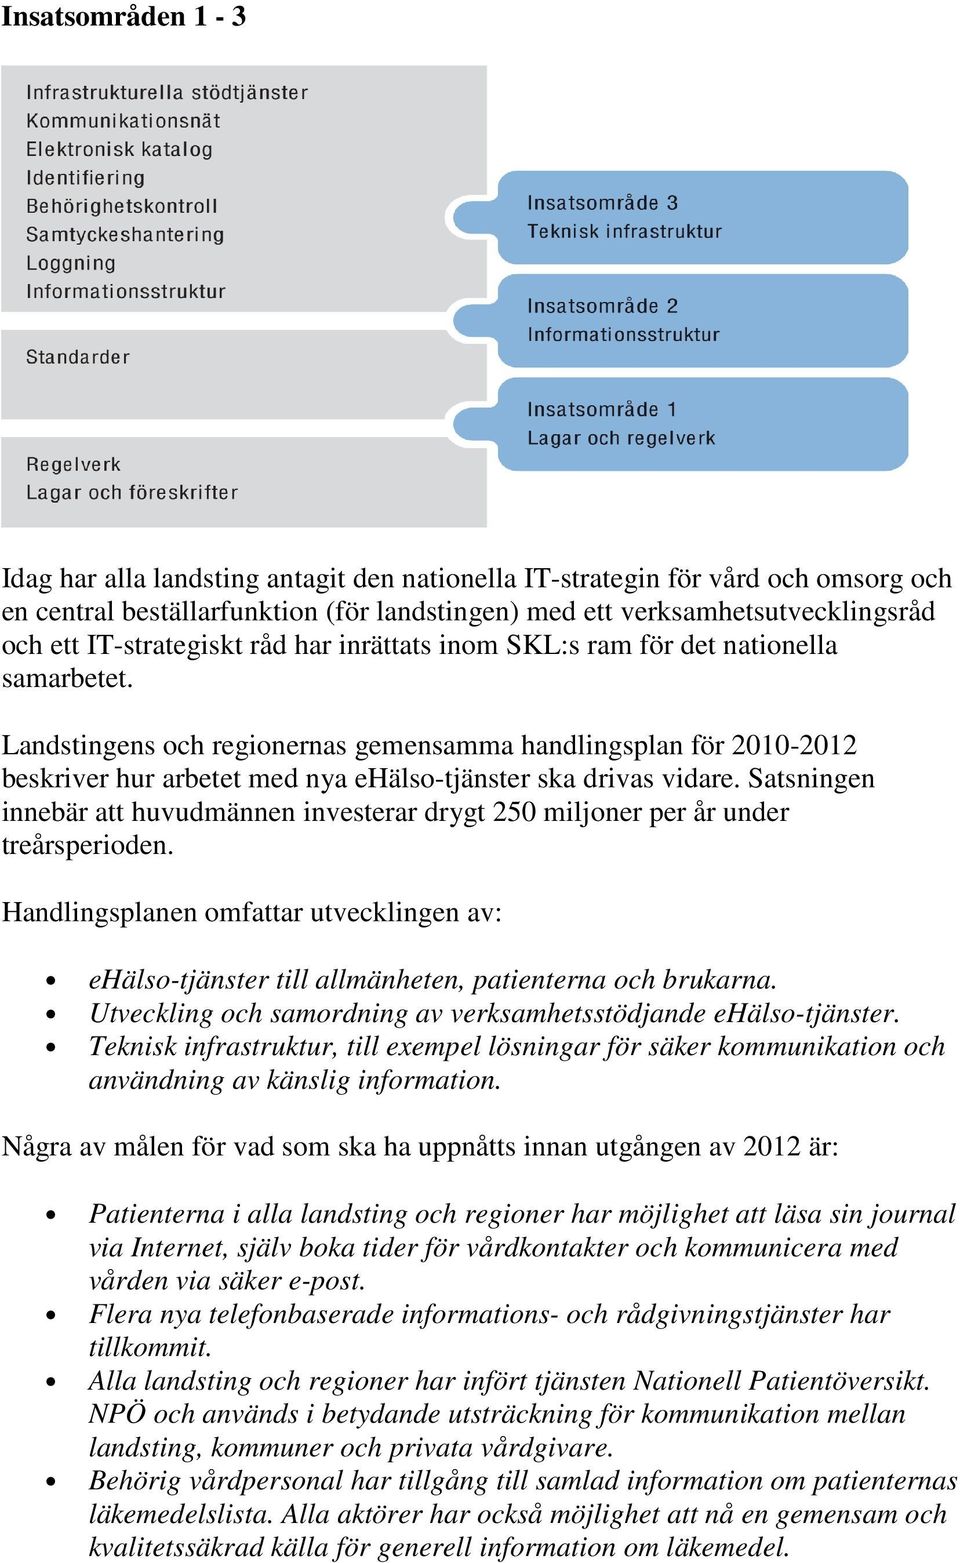 Landstingens och regionernas gemensamma handlingsplan för 2010-2012 beskriver hur arbetet med nya ehälso-tjänster ska drivas vidare.